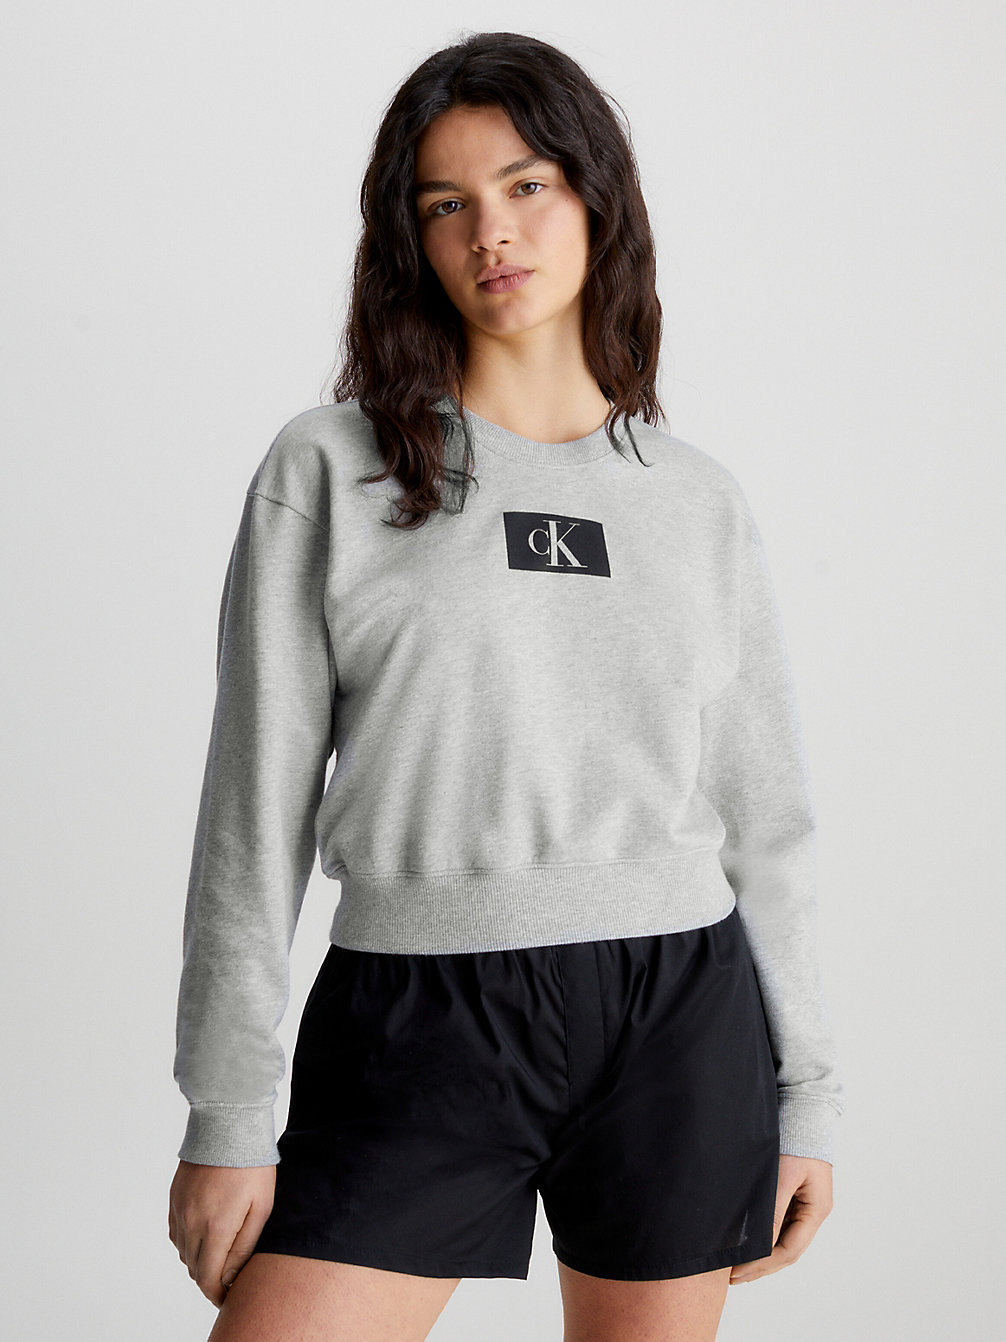 GREY HEATHER Lounge Sweatshirt - Ck96 undefined women Calvin Klein